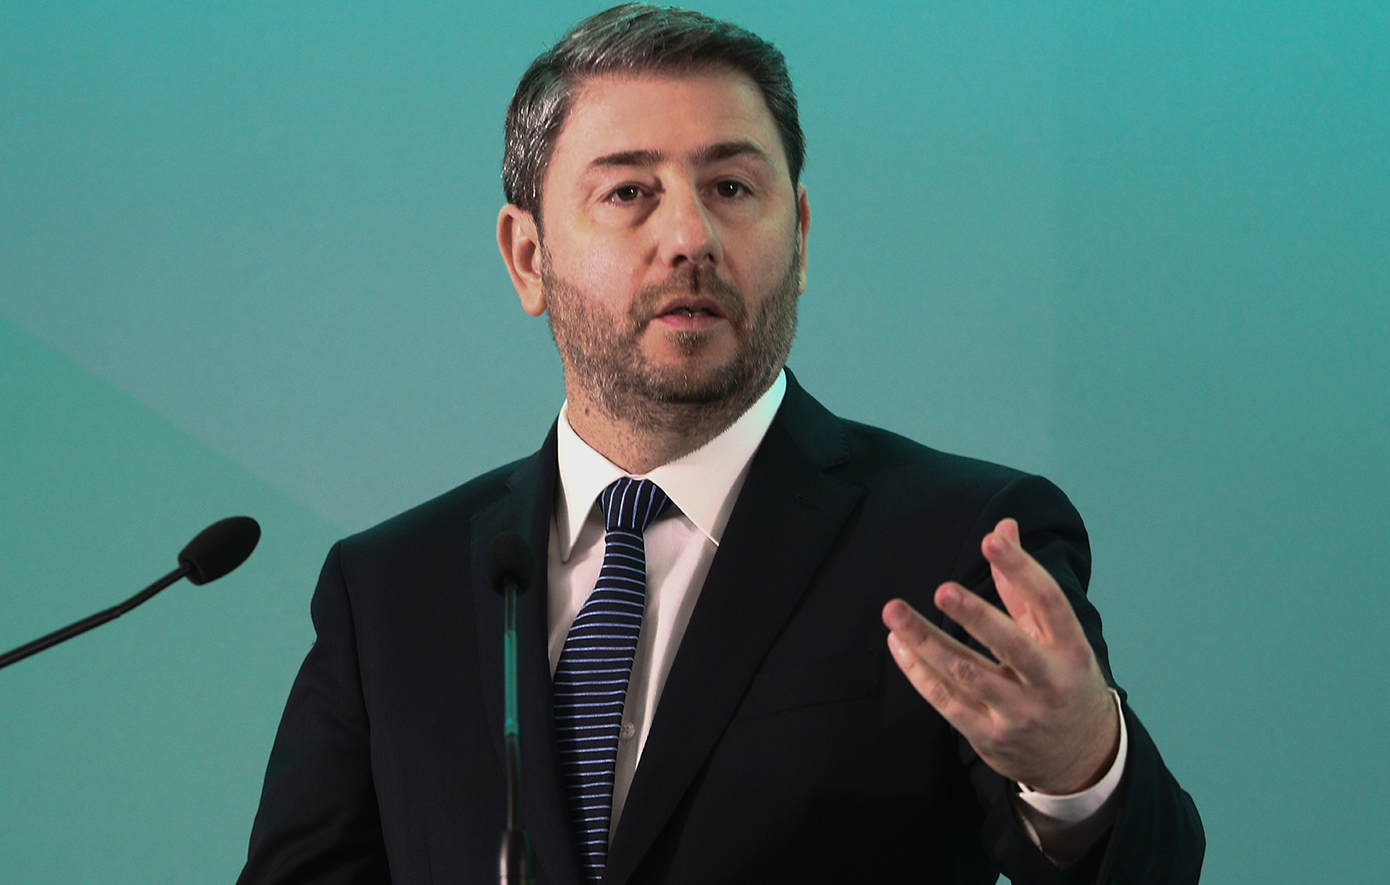 Ανδρουλάκης: Το ΠΑΣΟΚ θα αγωνιστεί ώστε να υπάρχει αντίπαλος που θα μπορεί να κερδίσει τη ΝΔ στις επόμενες εκλογές